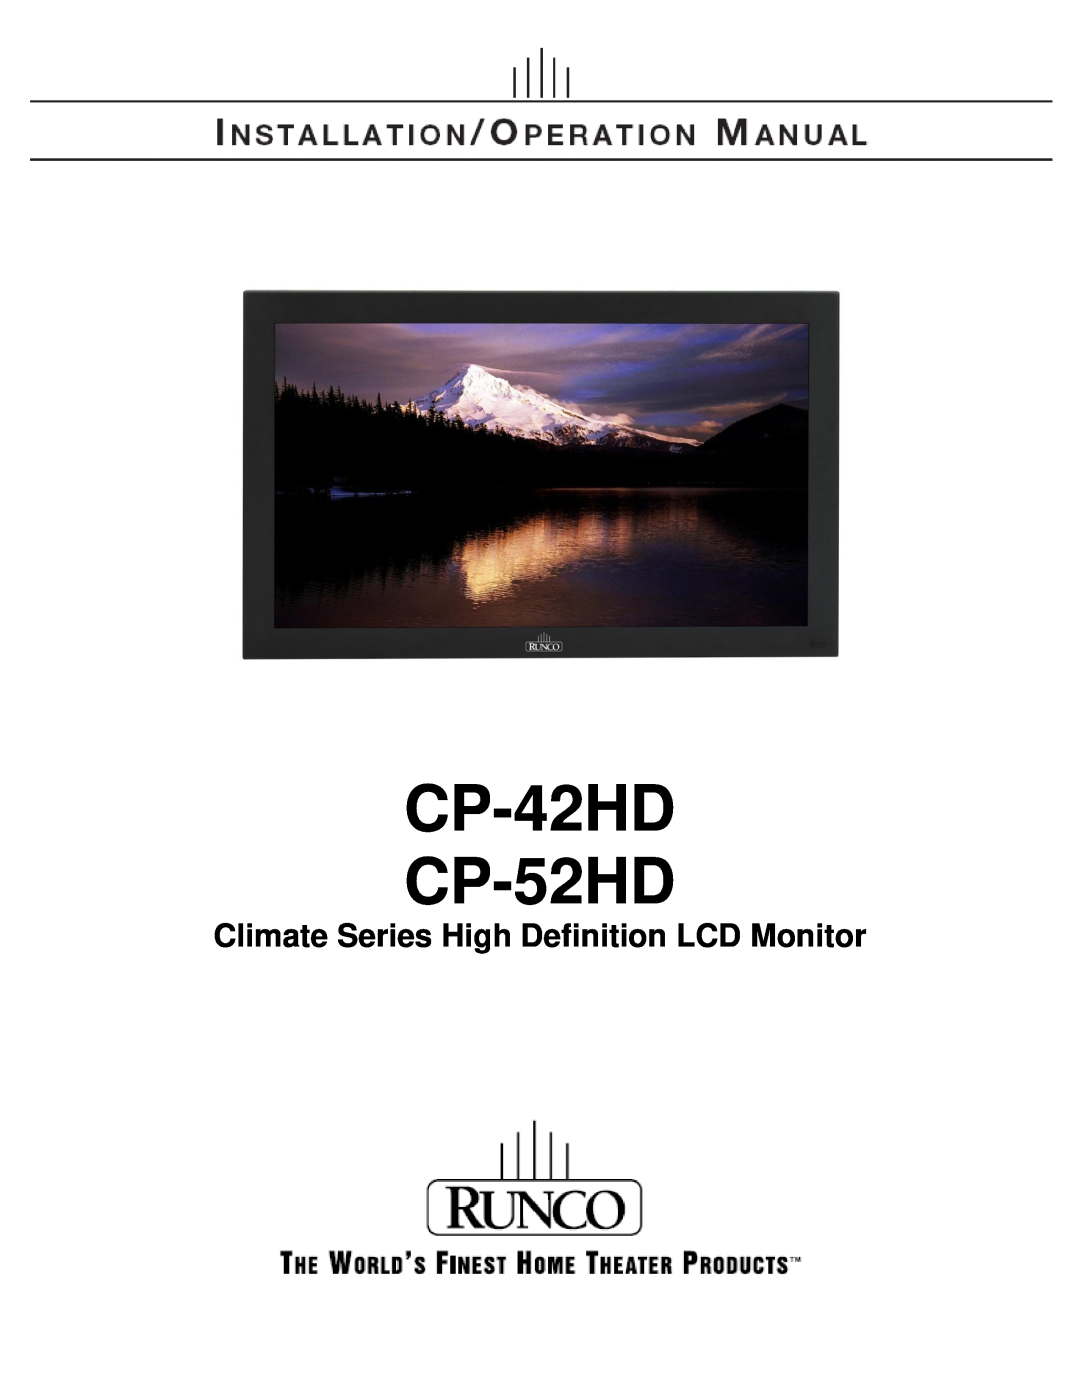 Runco manual CP-42HD CP-52HD, Climate Series High Definition LCD Monitor 